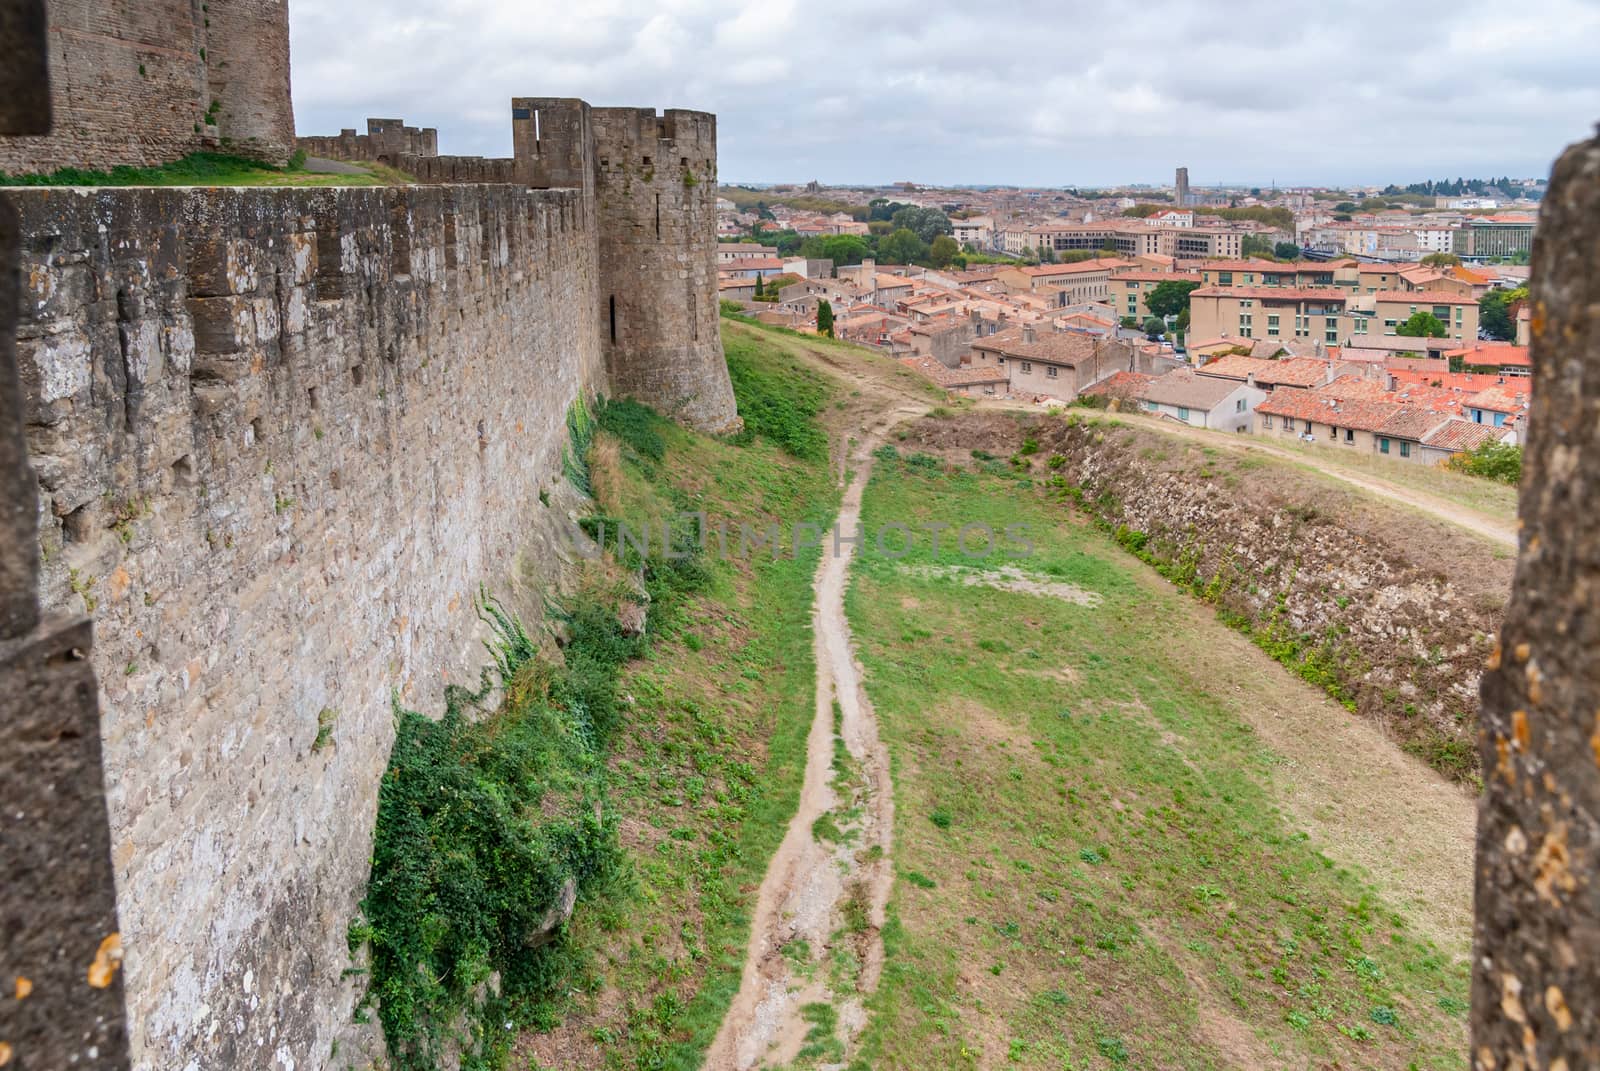 Castle of Carcassonne, Languedoc-Roussillon, Aude Occitanie France